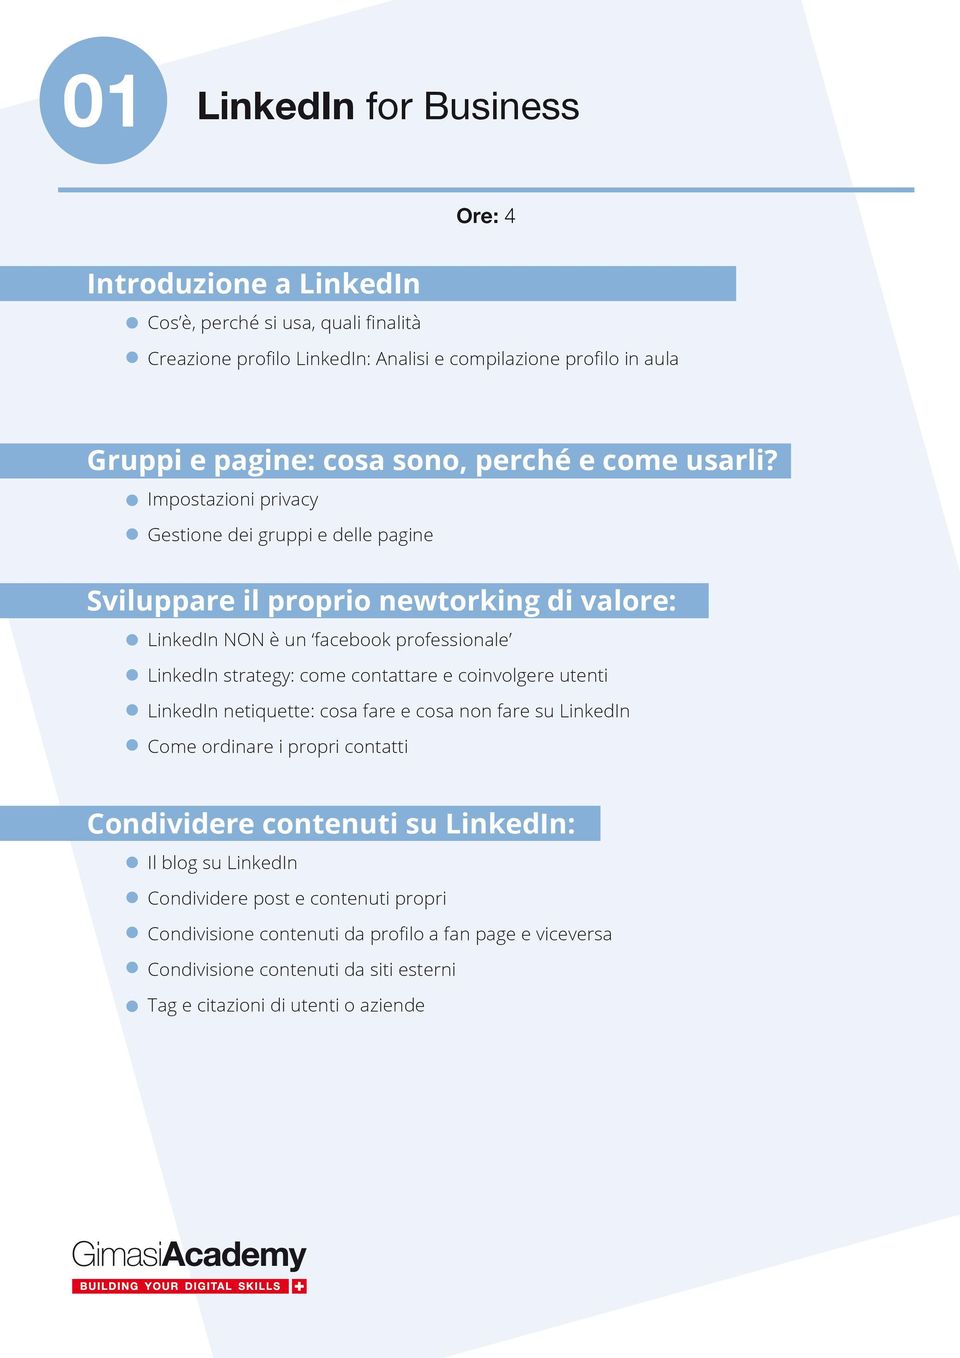 Impostazioni privacy Gestione dei gruppi e delle pagine Sviluppare il proprio newtorking di valore: LinkedIn NON è un facebook professionale LinkedIn strategy: come contattare e